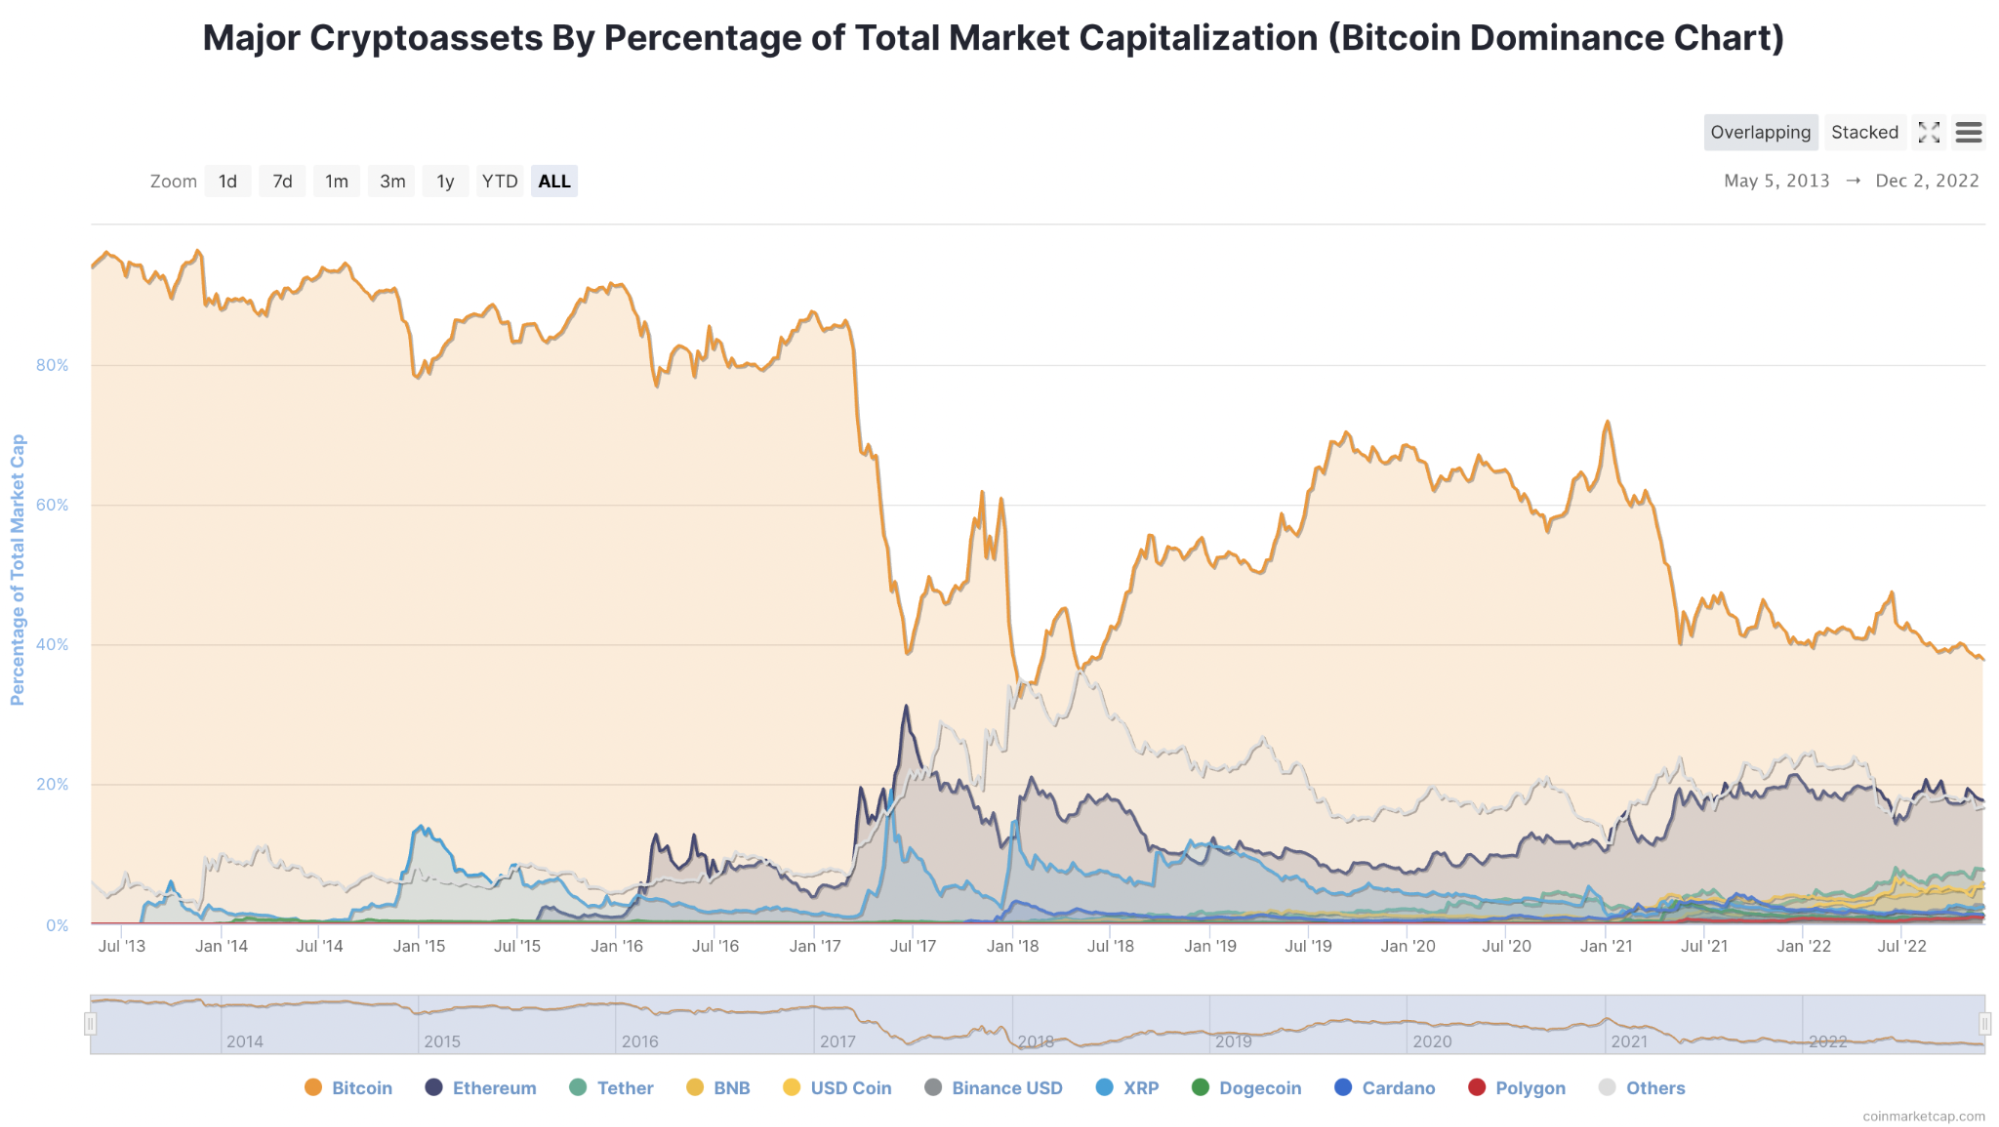 Grafik yang menunjukkan aset kripto berdasarkan persentase kapitalisasi pasar total